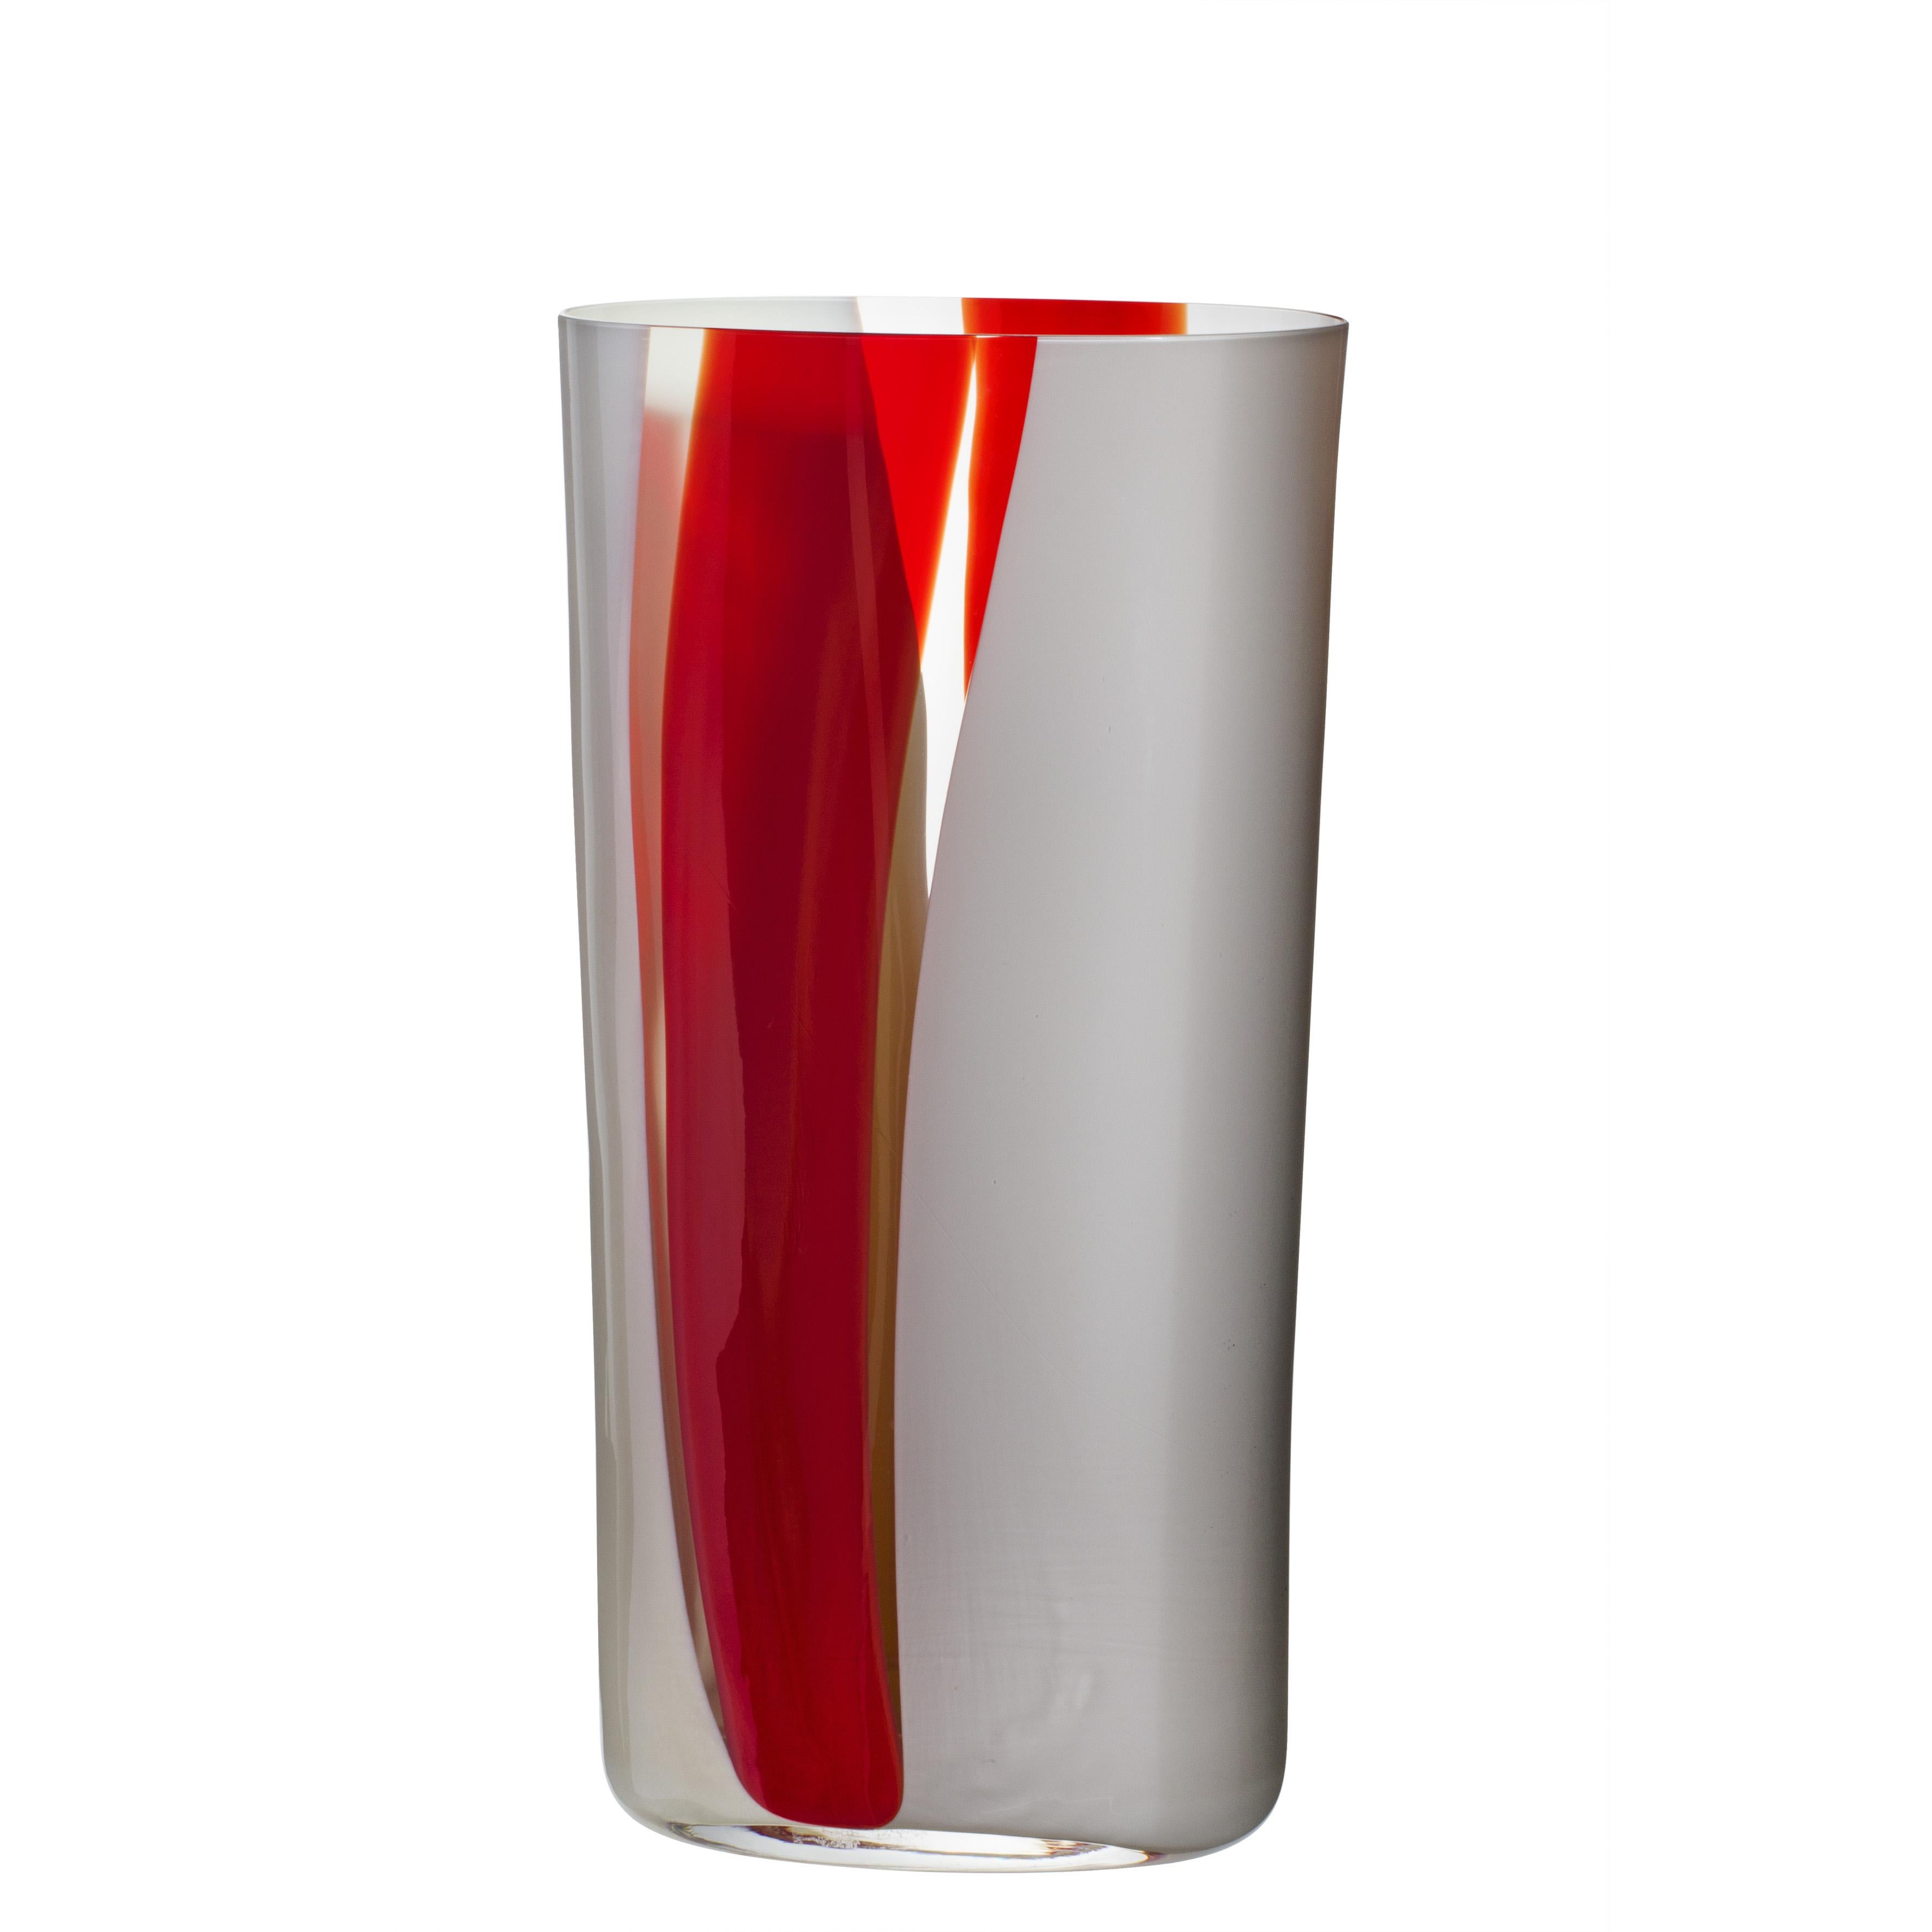 Grand vase ovale rouge, blanc et gris par Carlo Moretti